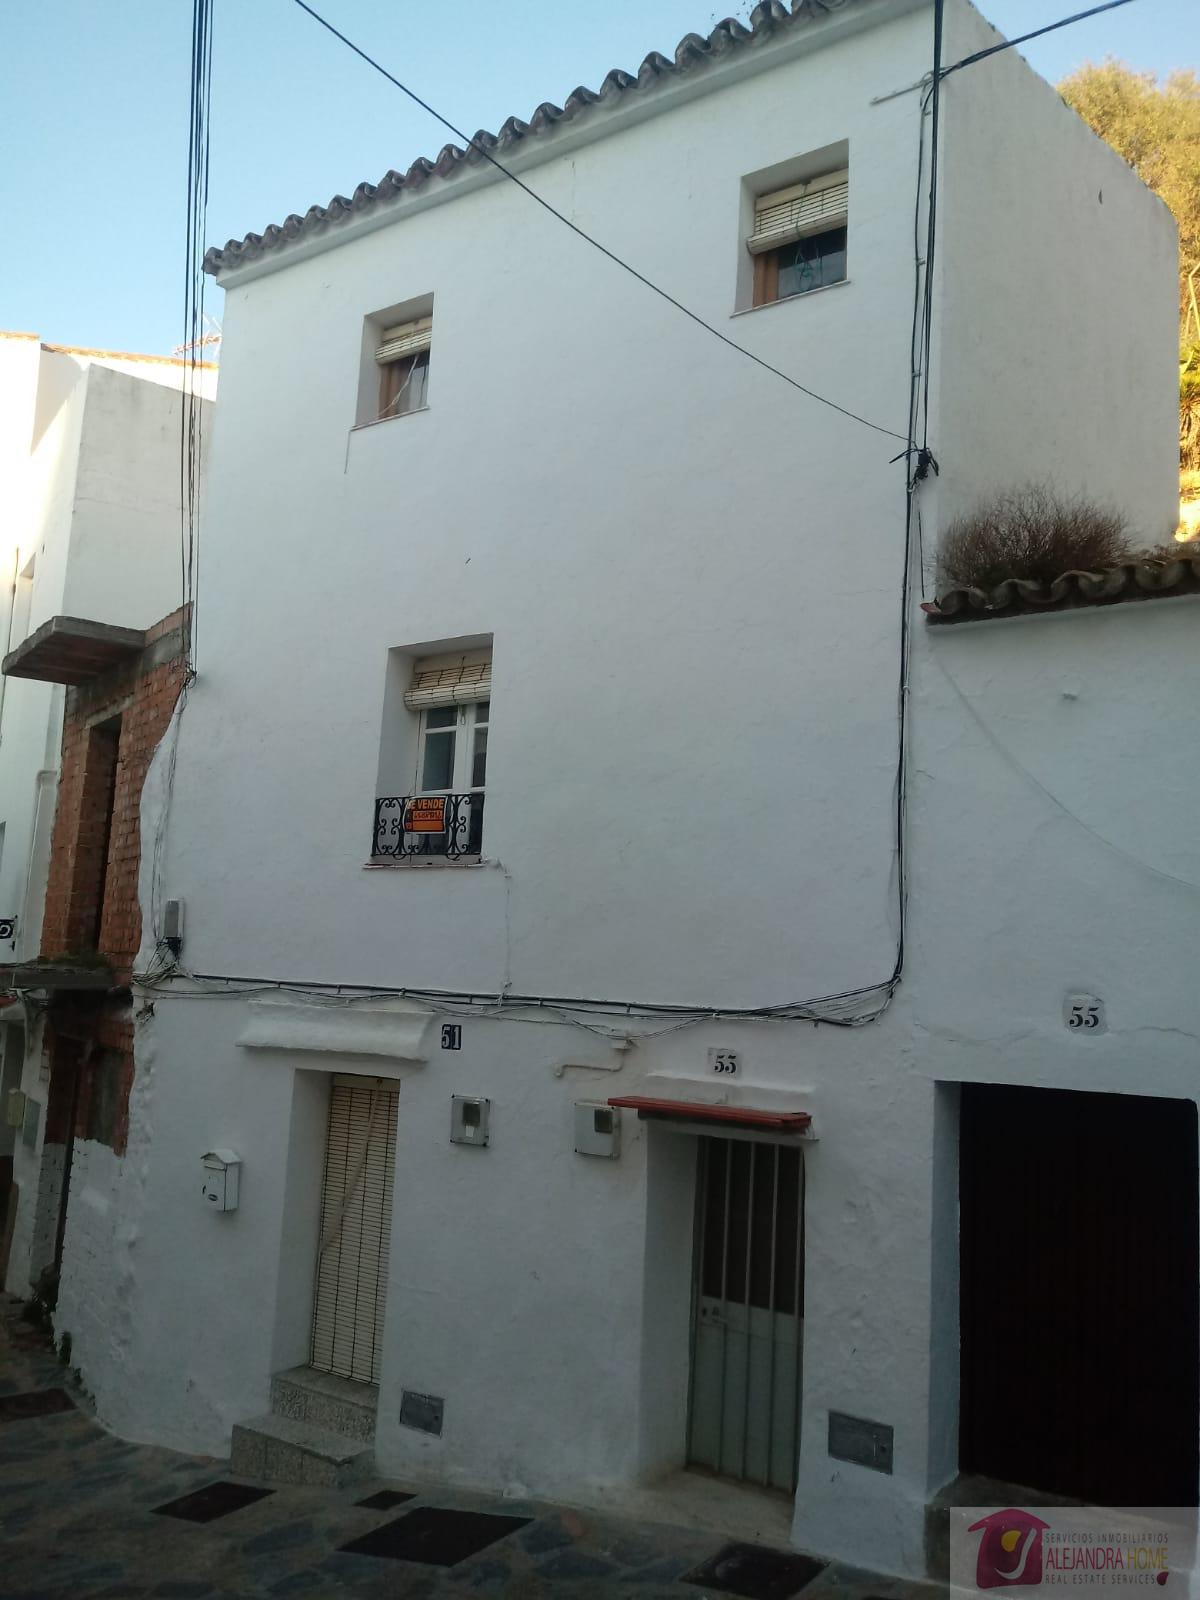 Verkoop van huis in Casares